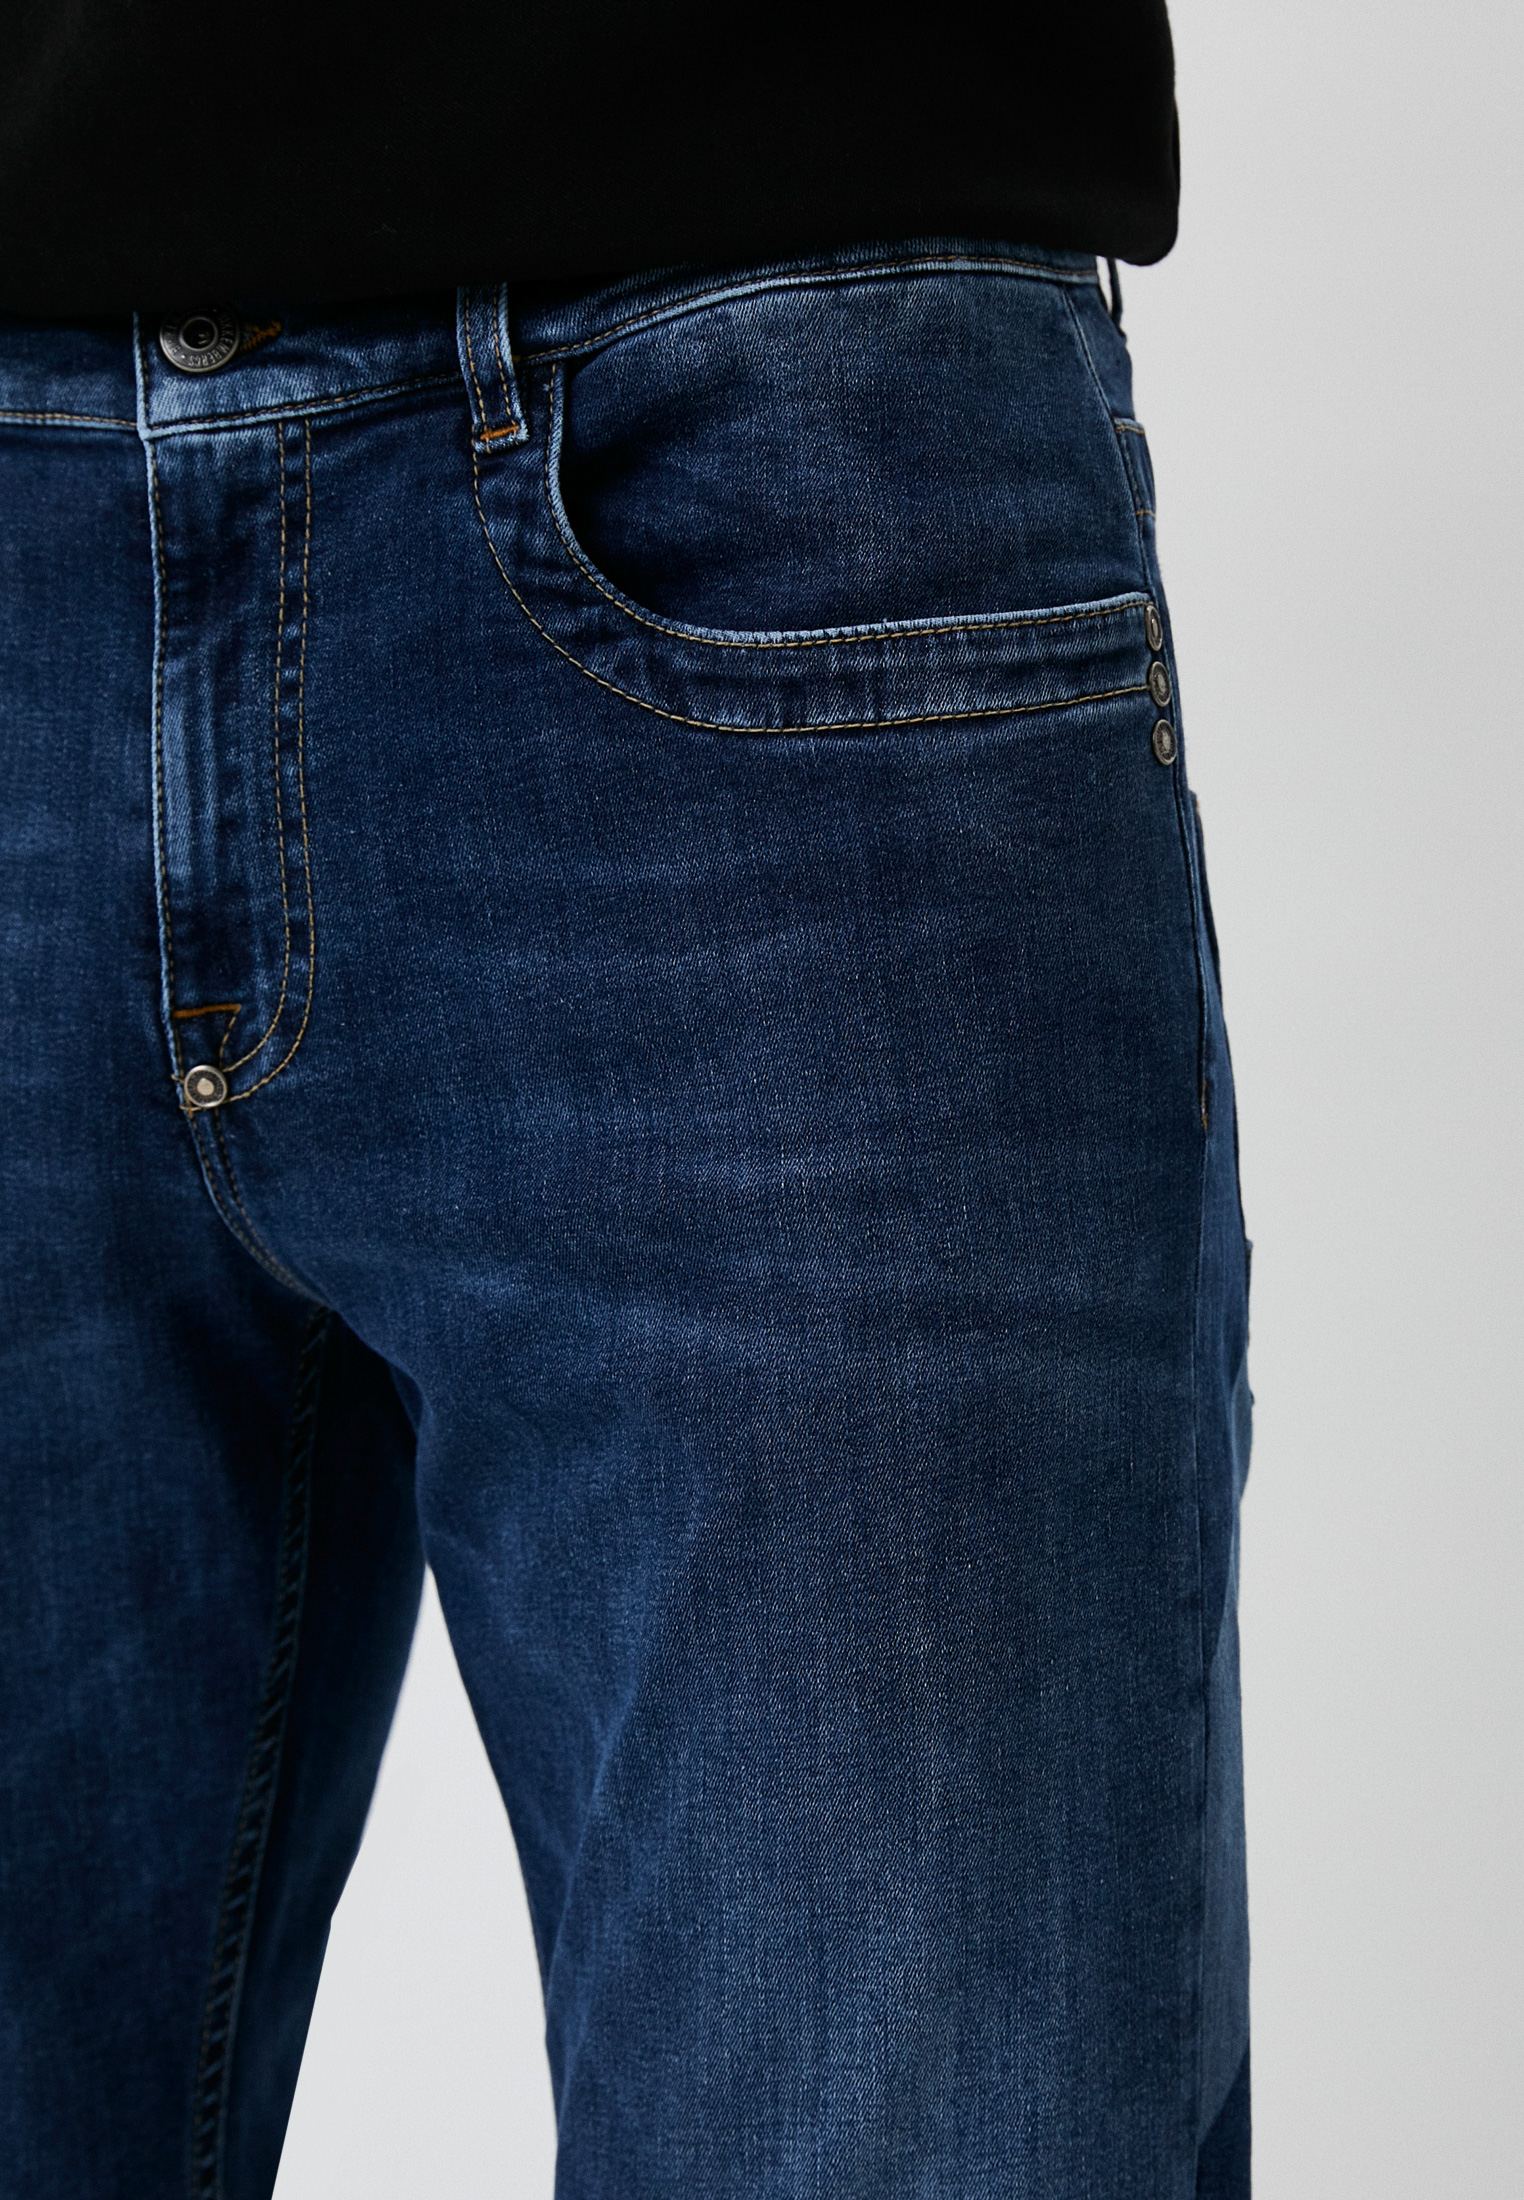 Мужские прямые джинсы Bikkembergs (Биккембергс) C Q 101 1B S 3511: изображение 4